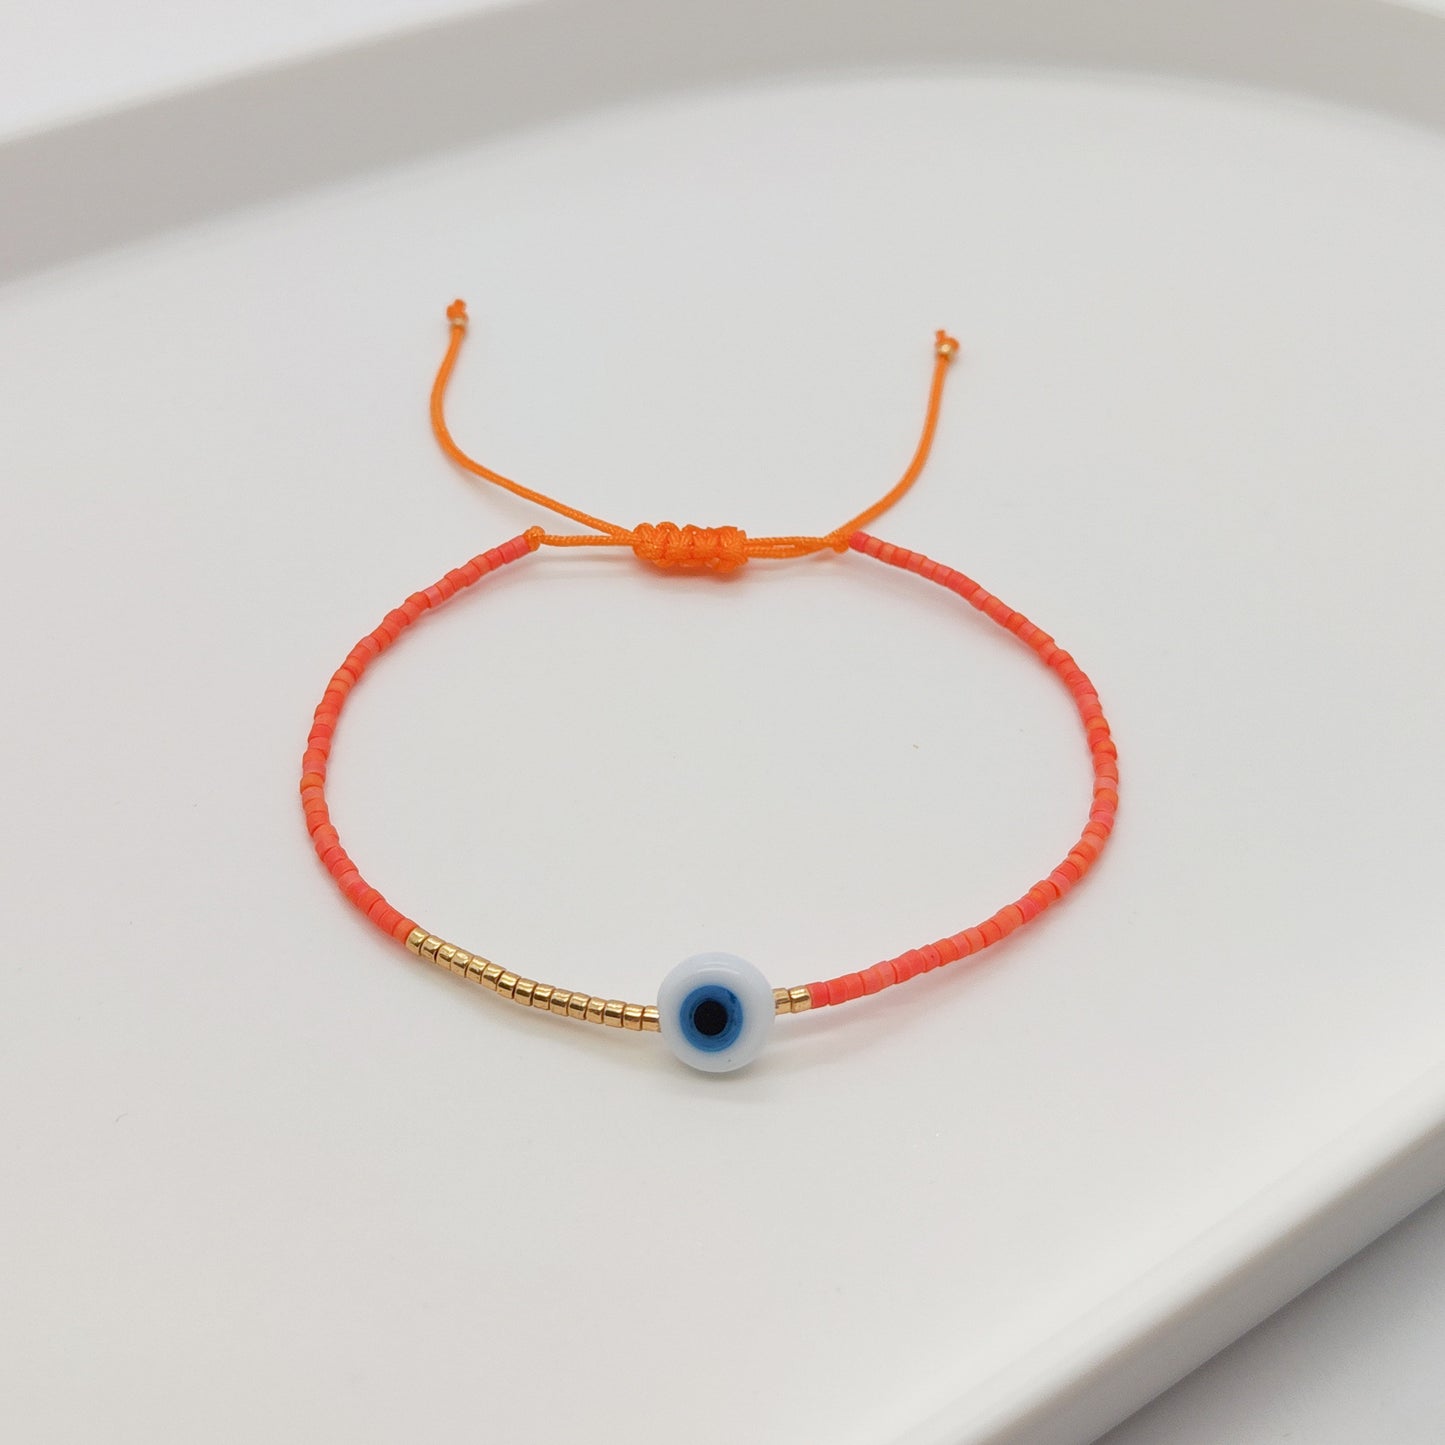 Simple Style Devil's Eye Glass Glass Beaded Women's Bracelets